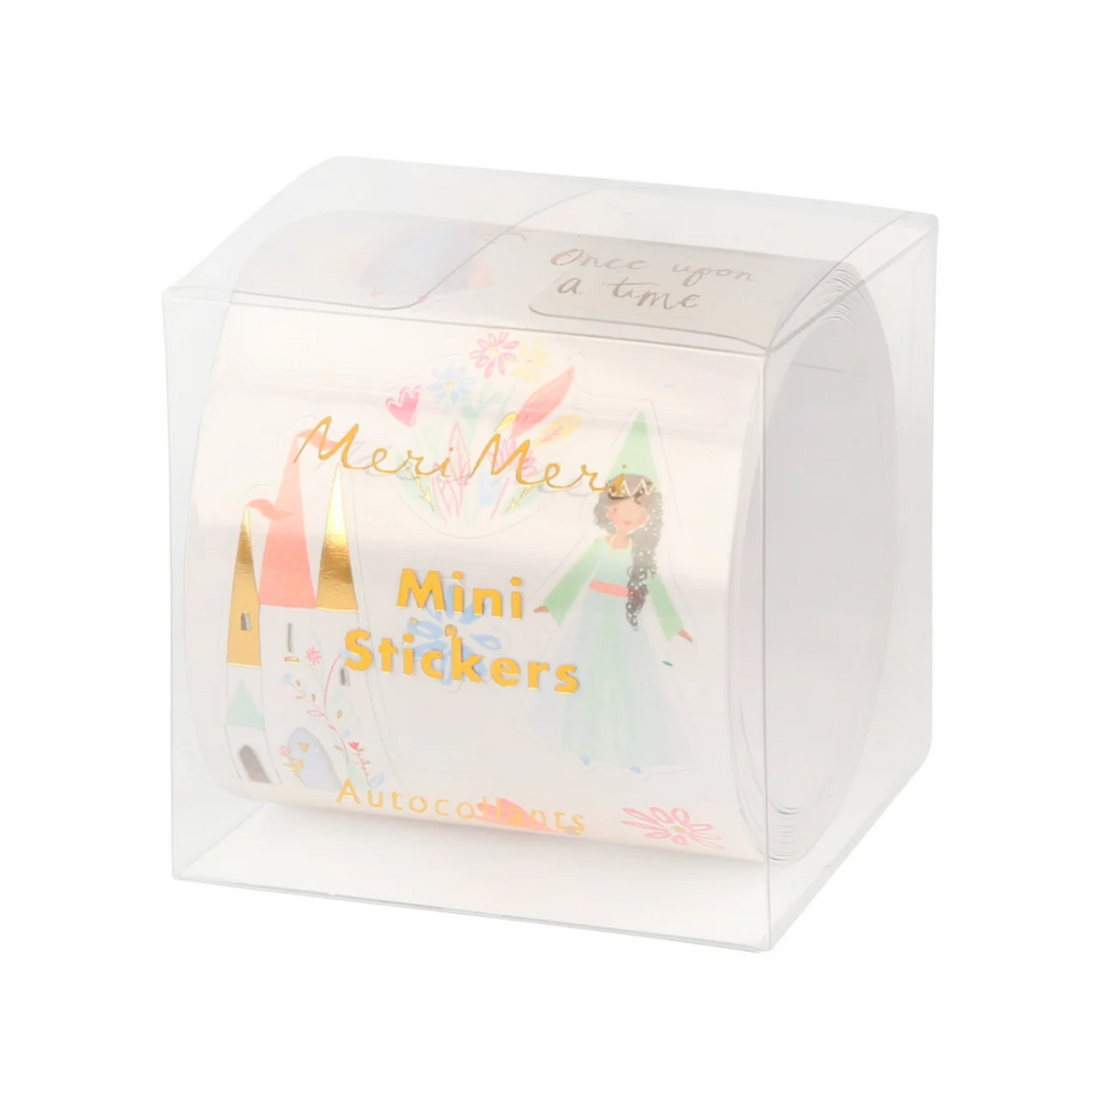 Mini stickere - Magical Princess, 312 buc - Meri Meri